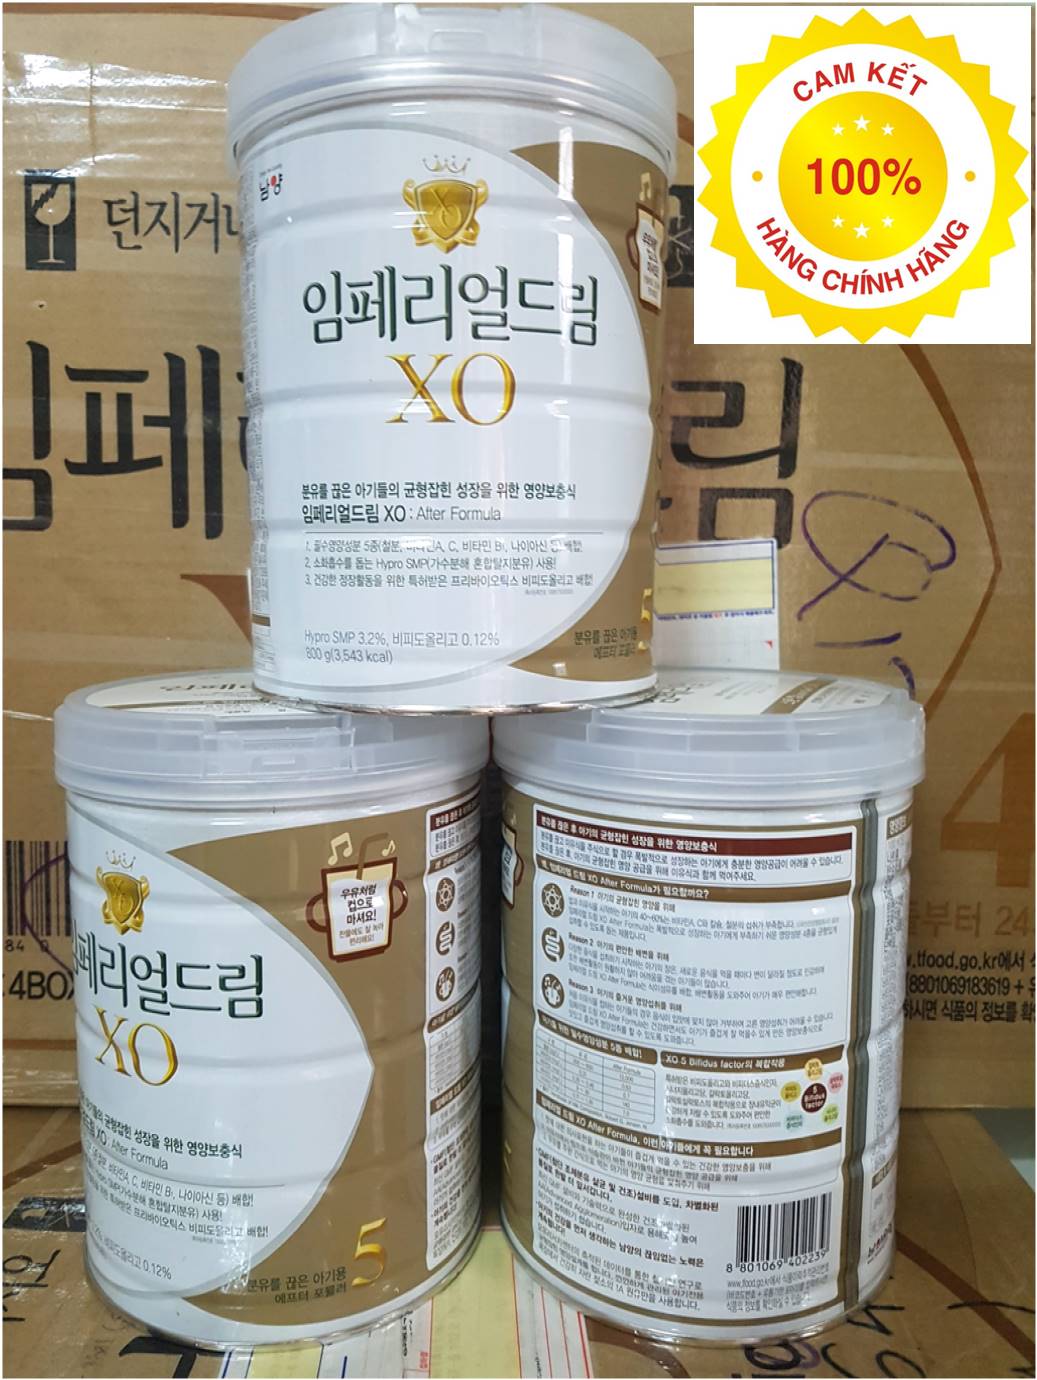 Combo 3 hộp sữa XO Hàn Quốc số 5 800g chính hãng cho bé 18 36 tháng tuổi